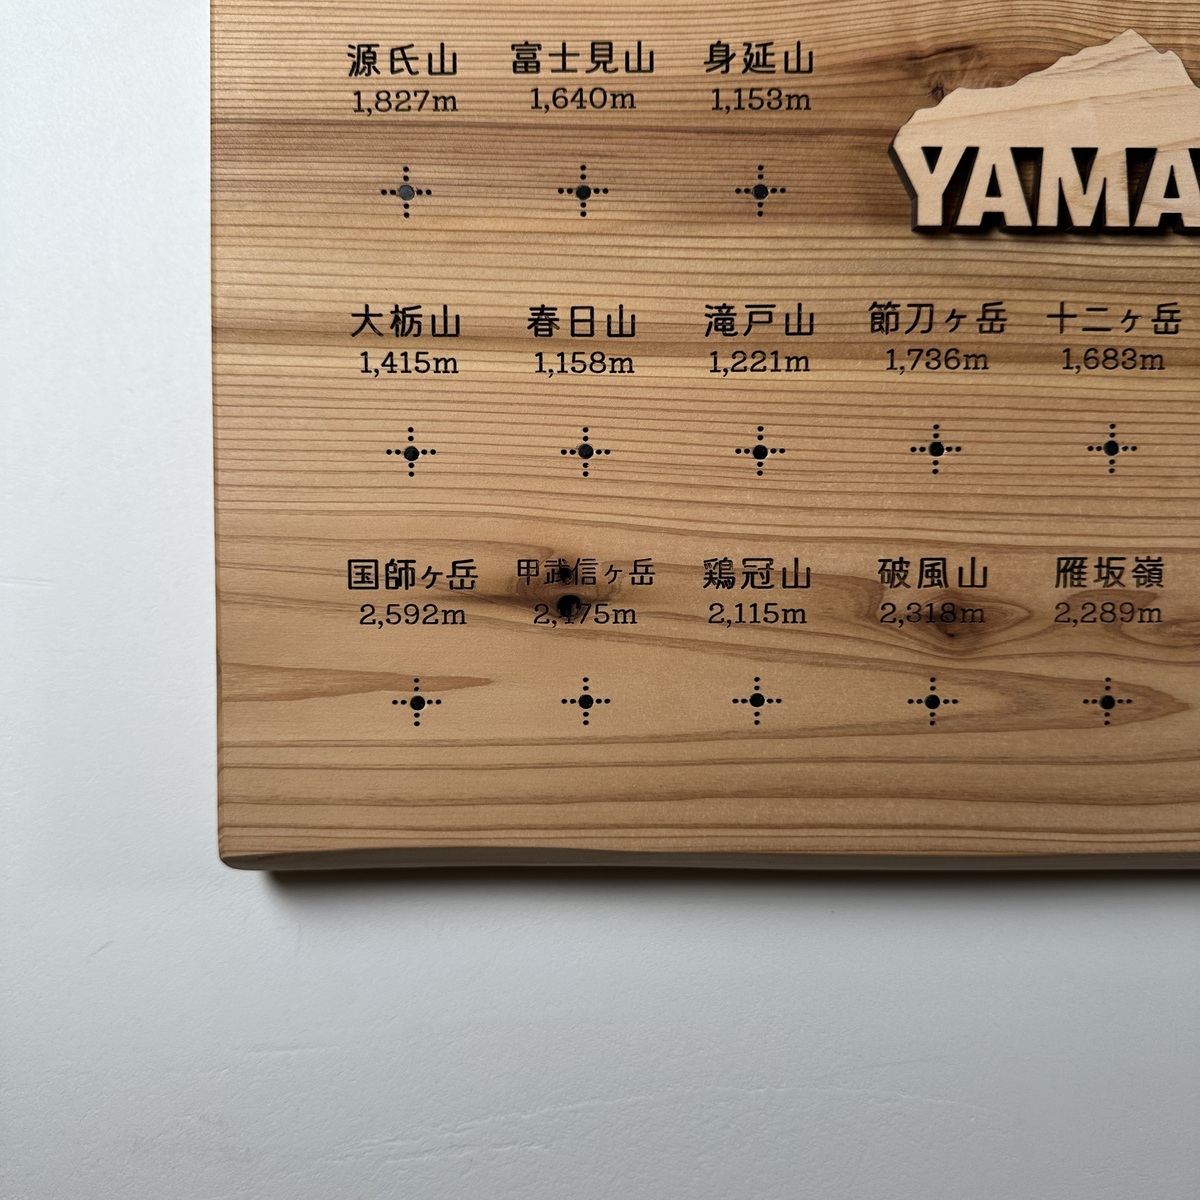 yamanashi-01